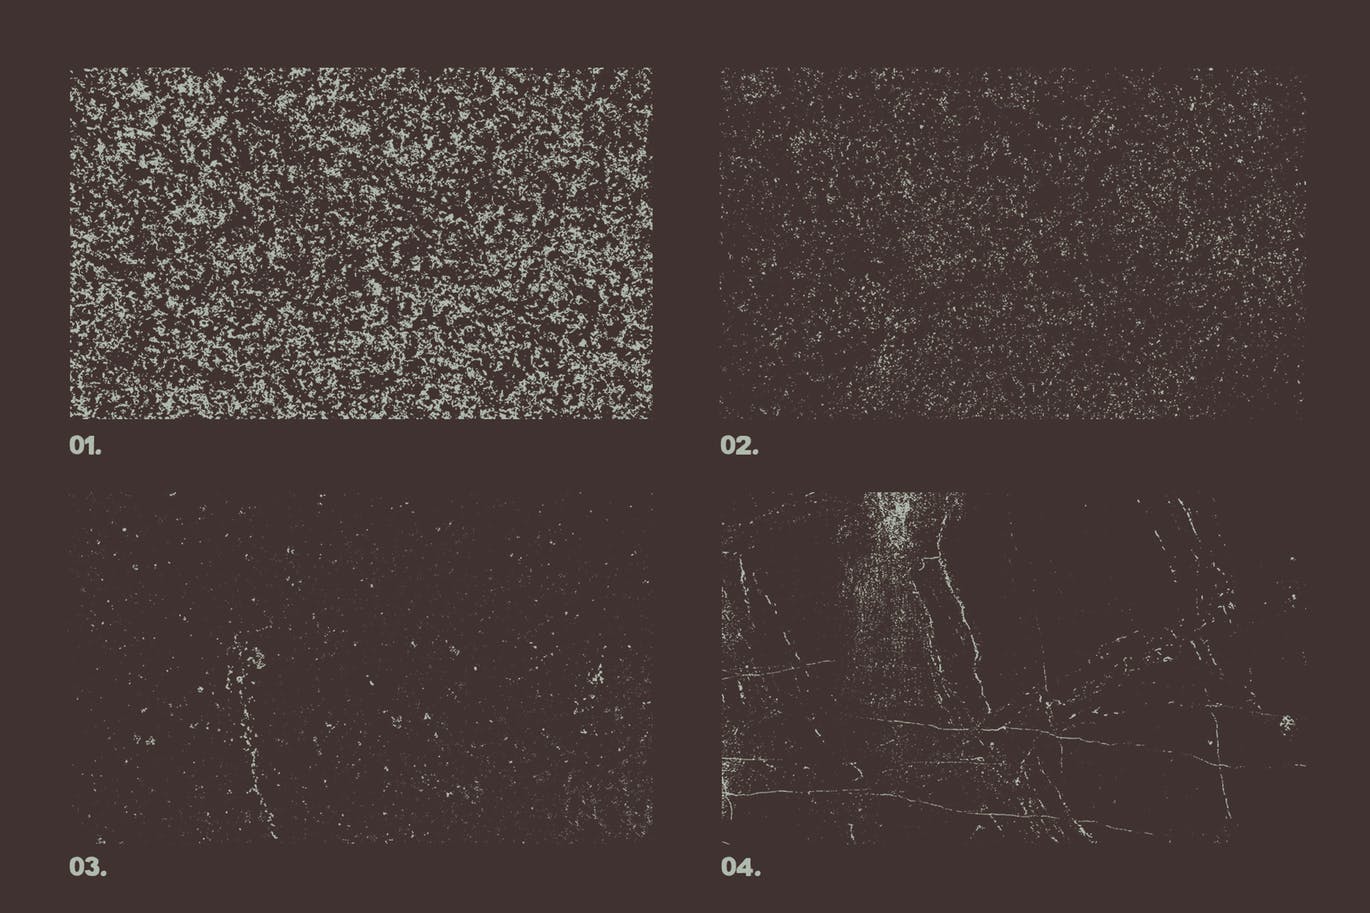 12款大理石纹理矢量背景素材 Vector Marble Textures x12插图(3)